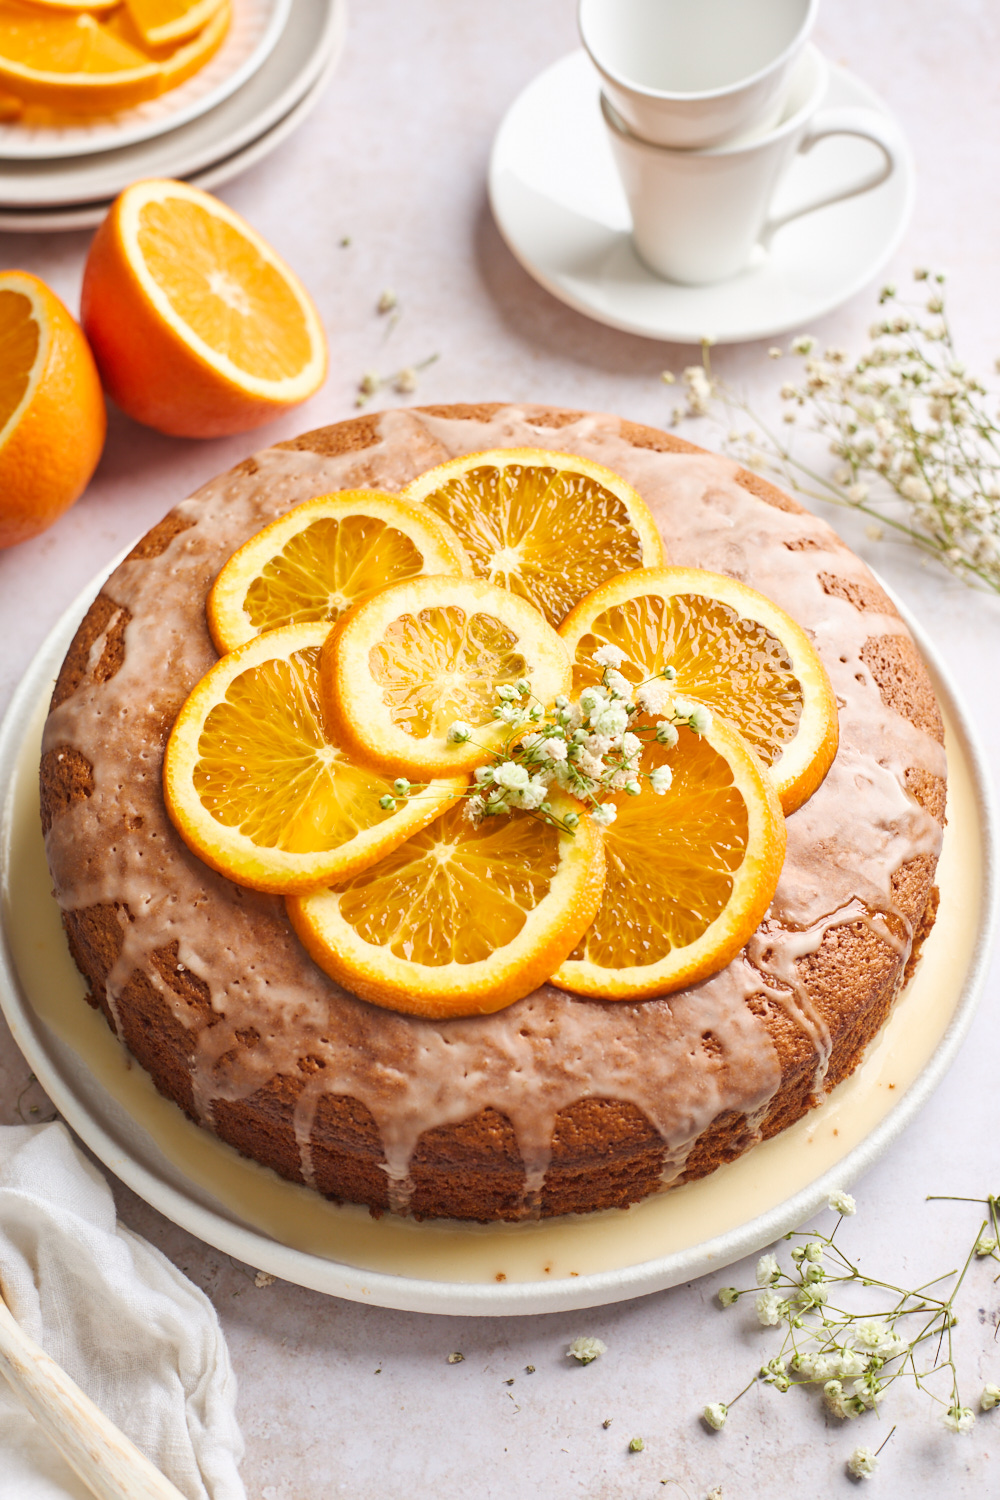 Whole Orange Cake